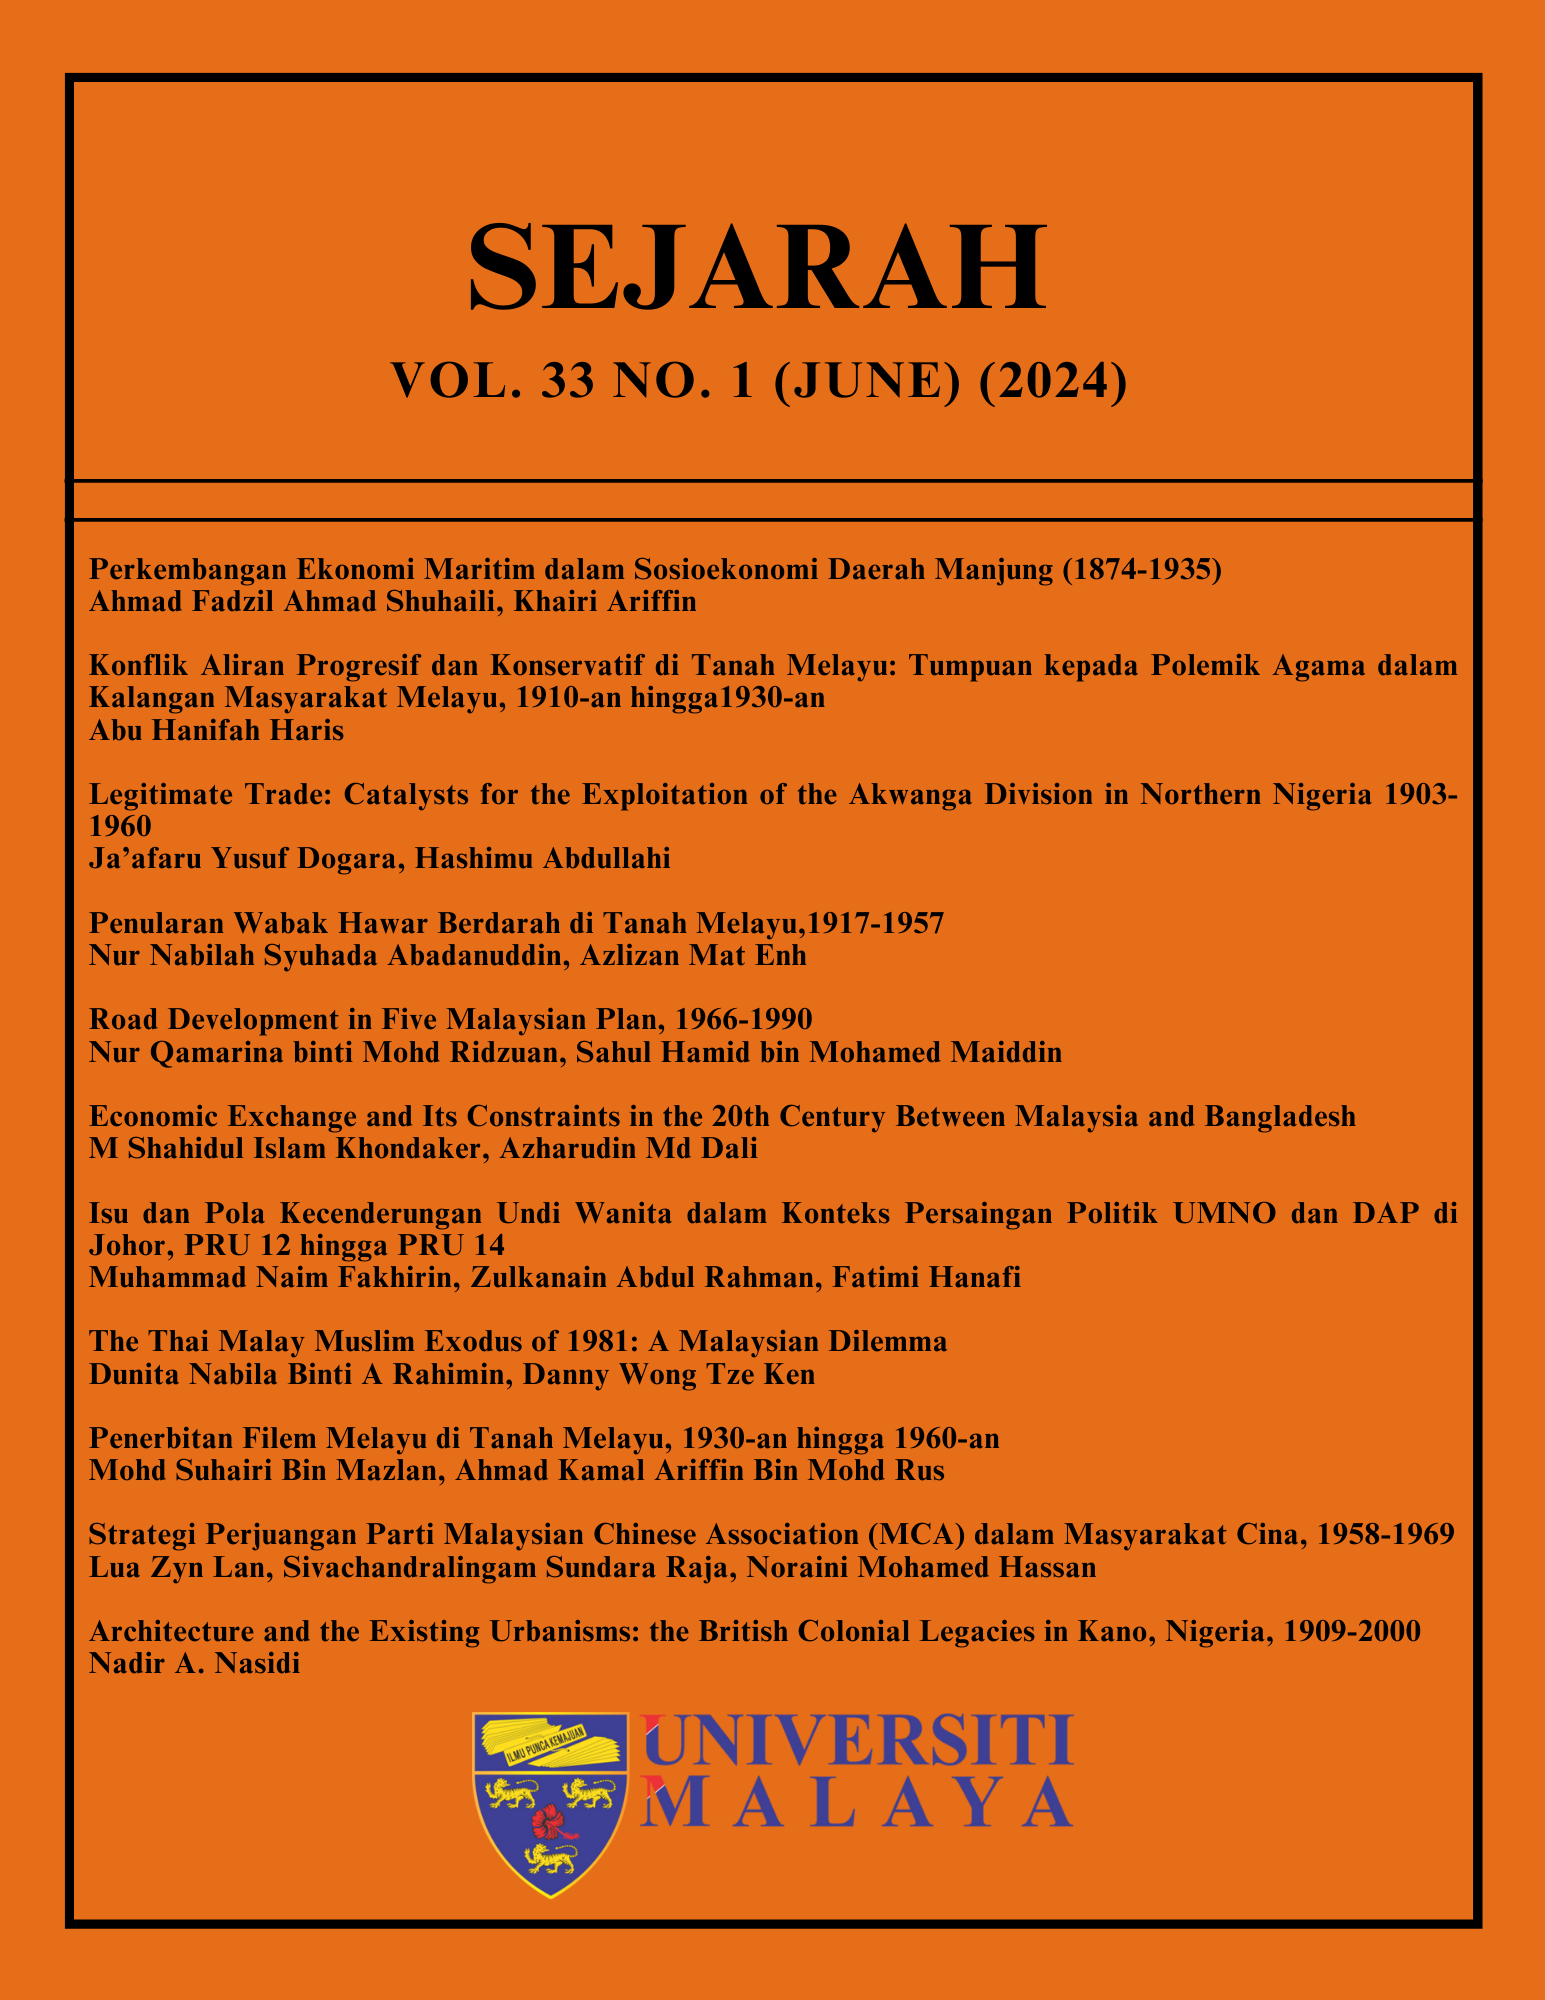 					View Vol. 33 No. 1 (June) (2024): SEJARAH
				